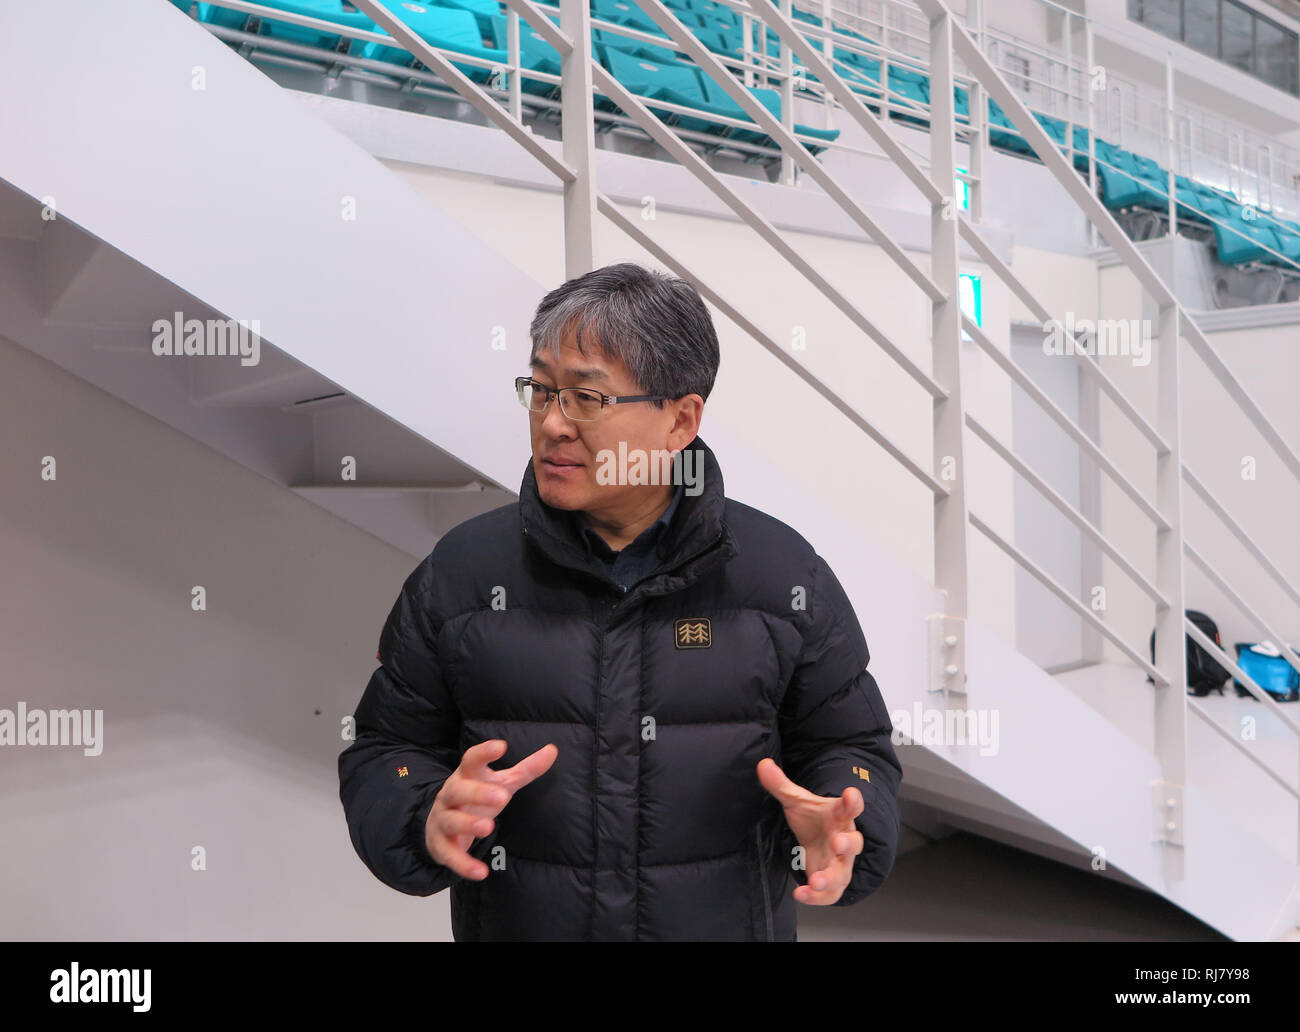 28 janvier 2019, la Corée du Sud, Gangneung : Choi Jong a gagné, le directeur de l'aréna de hockey sur glace de Gangneung et dans d'autres endroits de la 2018 Jeux Olympiques d'hiver à Pyeongchang, gesticulait pendant une entrevue dans le centre de Hockey de Gangneung. Les arènes de sports dans le Parc olympique de Gangneung, sur la côte est de la Corée du Sud donne l'impression que l'anneau spectacle pourrait commencer de nouveau demain. Aucun signe visible de détérioration. (Dpa 'un an après Pyeongchang - le lourd héritage des Jeux d'hiver') Photo : Dirk Godder/dpa Banque D'Images